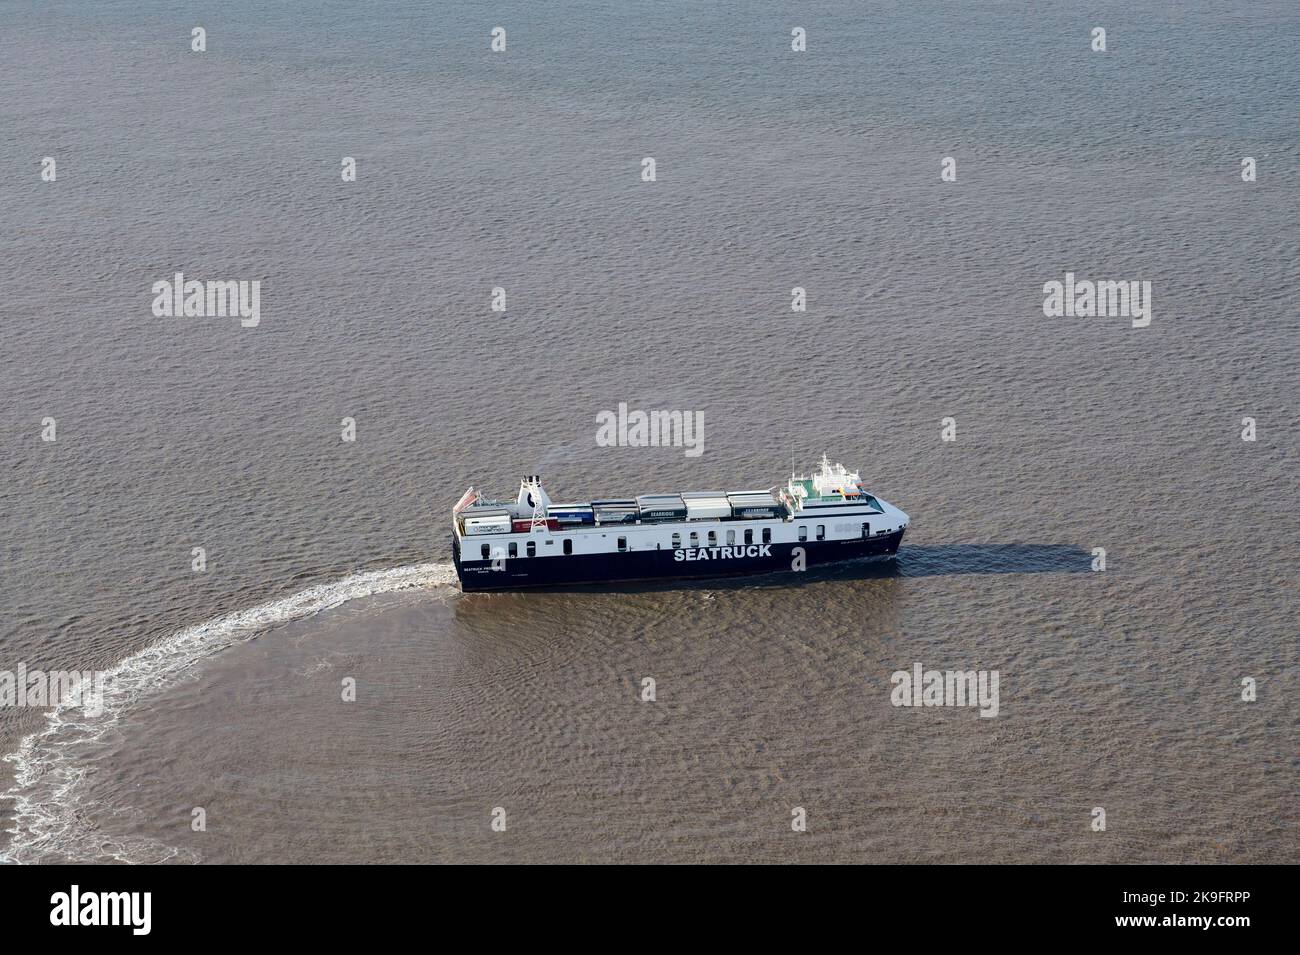 Une vue aérienne du ferry de Seatruck Progress Isle of Man, en quittant Liverpool, Merseyside, Liverpool, nord-ouest de l'Angleterre, ROYAUME-UNI Banque D'Images